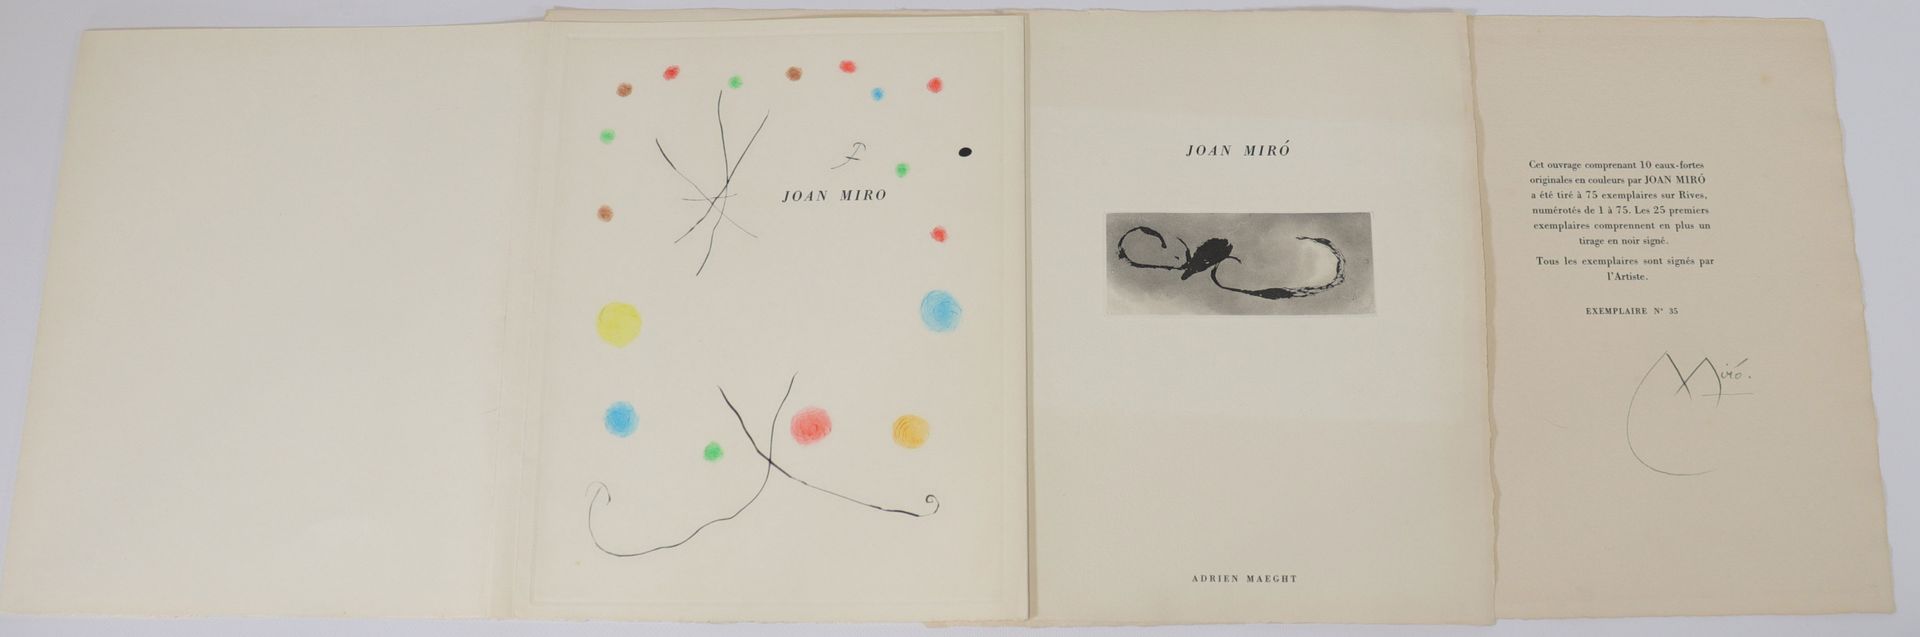 Joan Miró – 3 pièces (eaux fortes) Joan Miró - 3 pezzi (acqueforti)
Periodo: X 
&hellip;